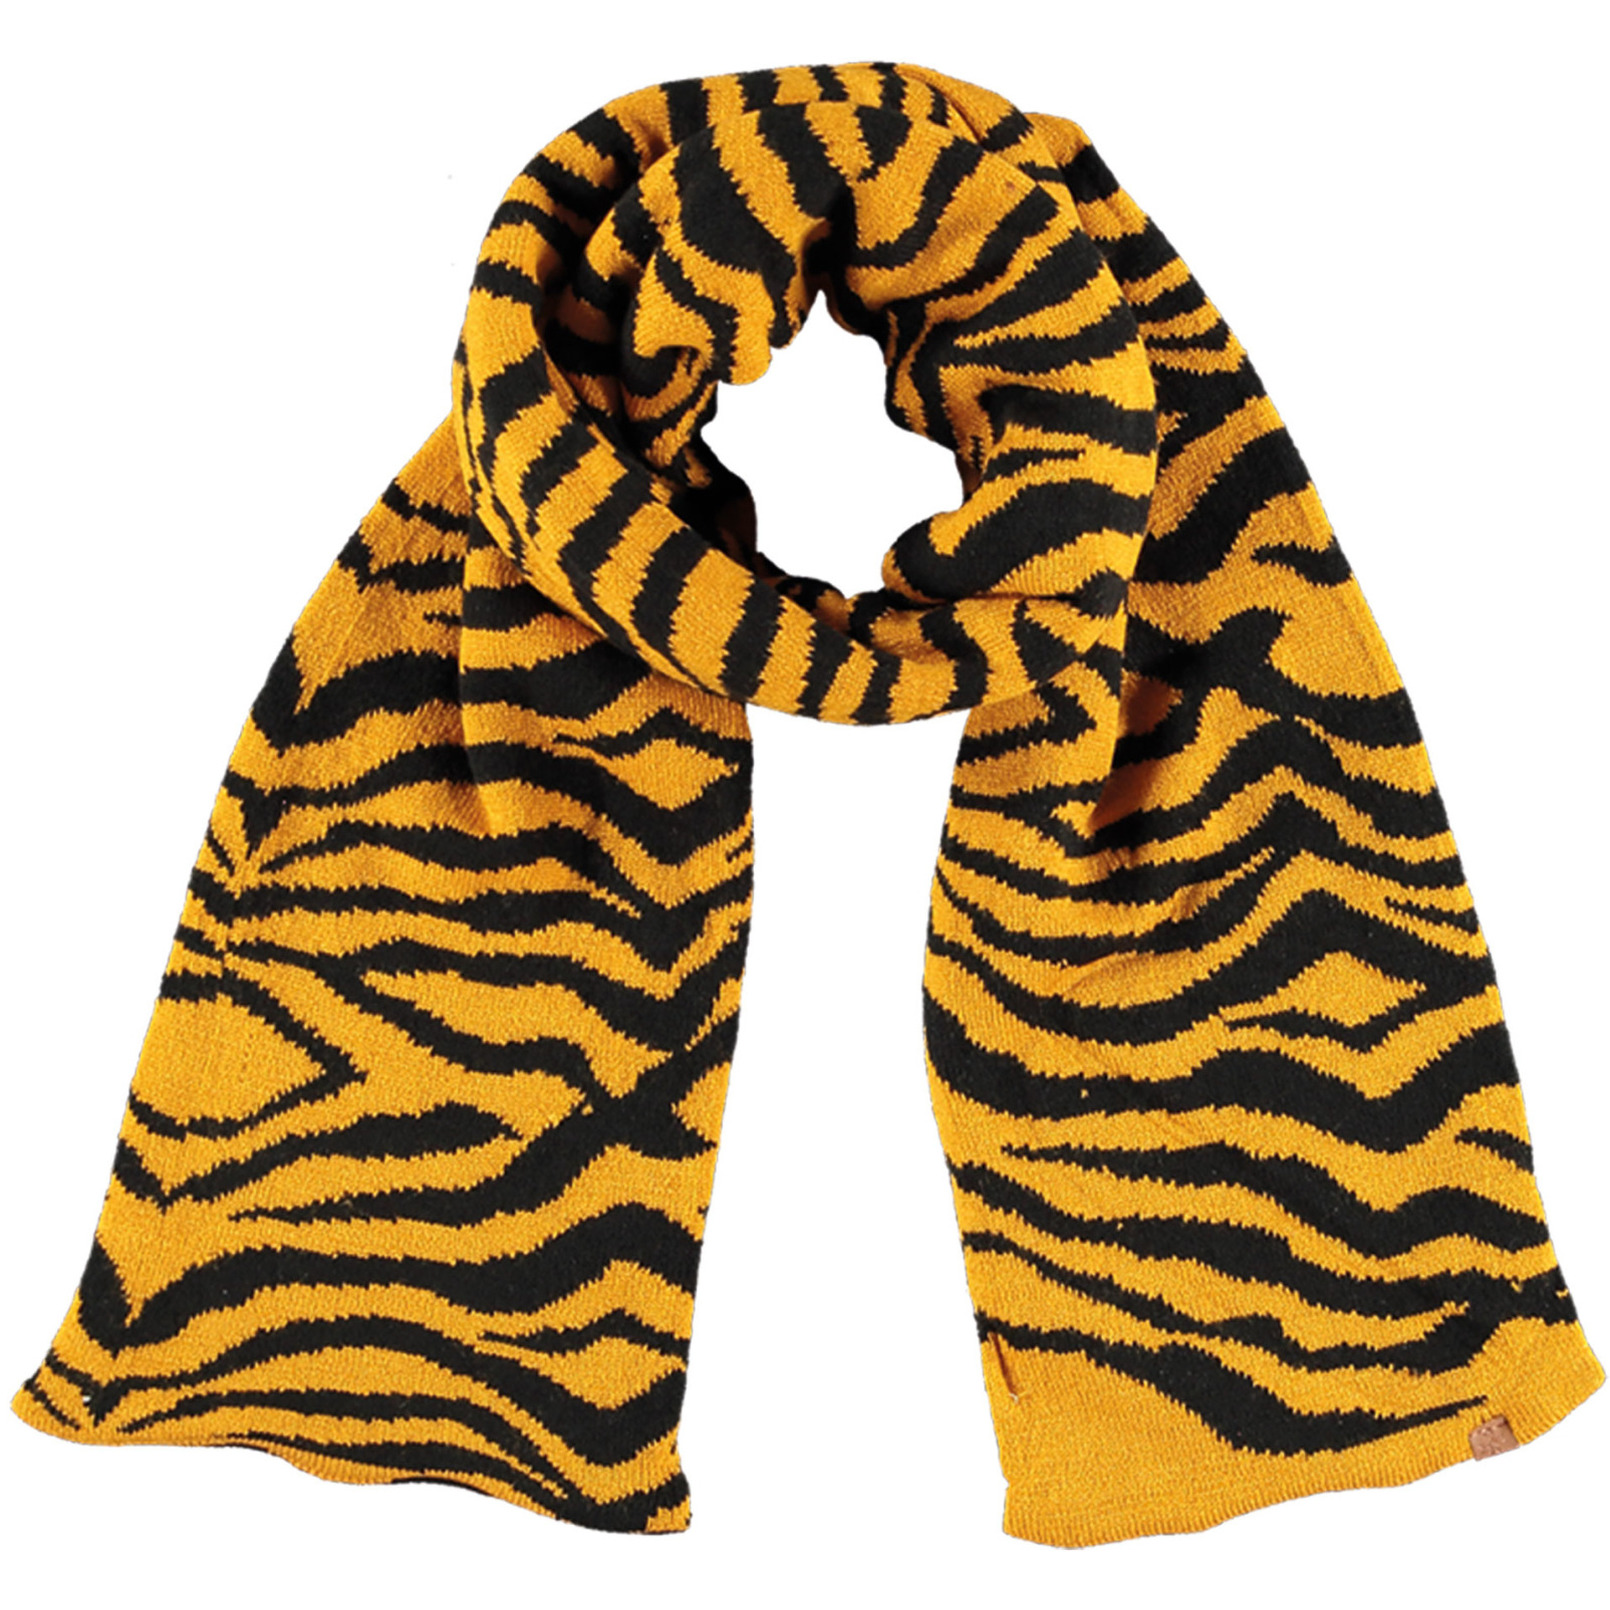 Okergele/zwarte tijger/zebra strepen patroon sjaal/shawl voor meisjes -